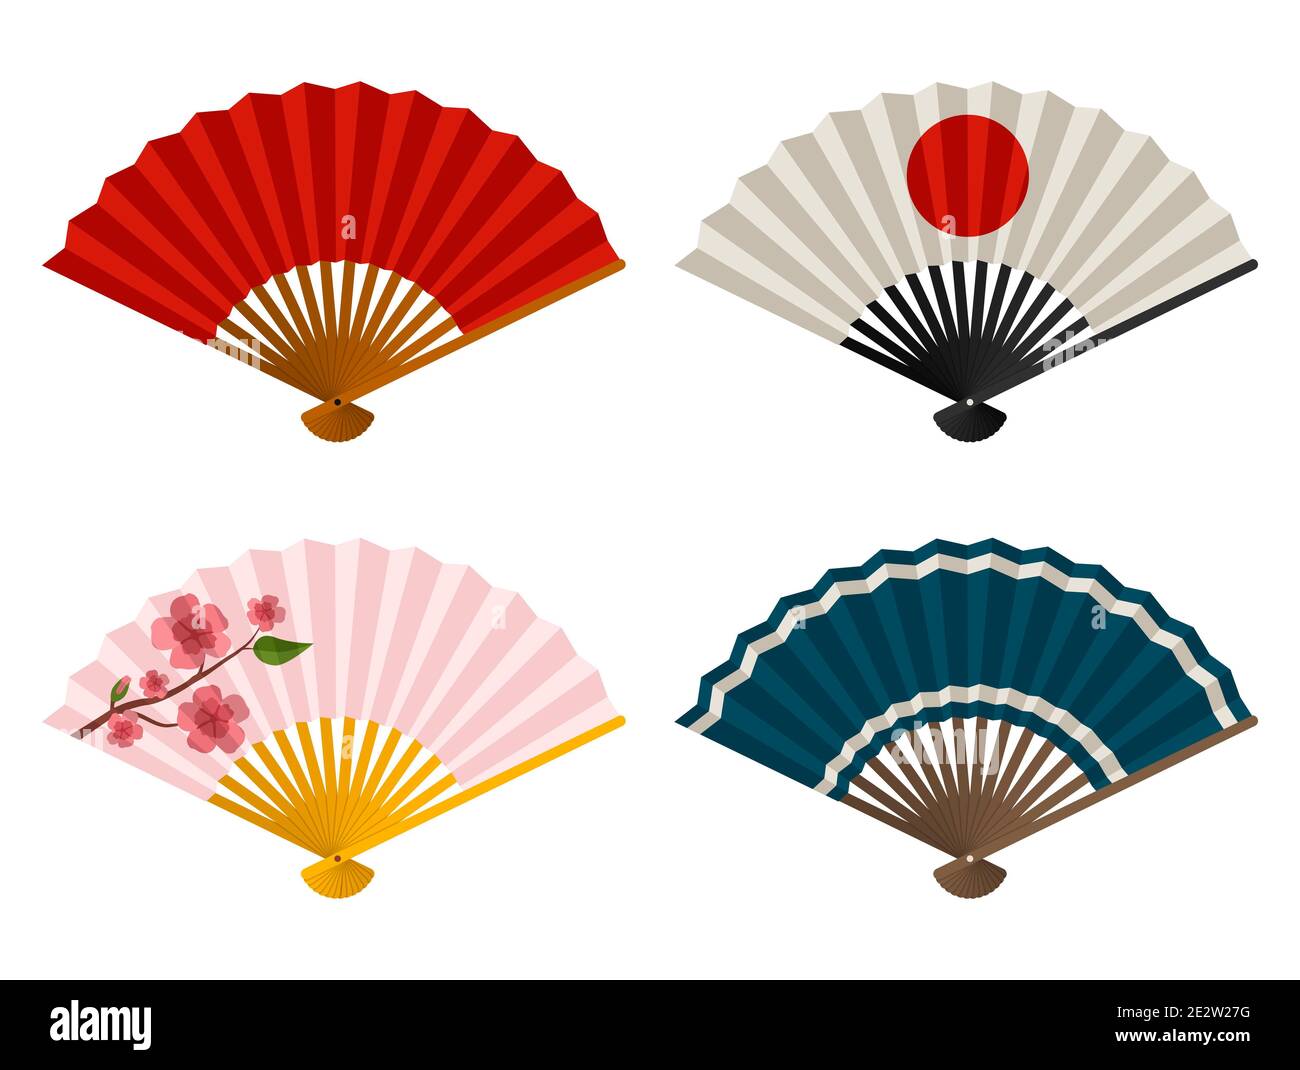 Handventilatoren, isoliert auf weißem Hintergrund, japanischer und chinesischer Faltfächer, traditioneller asiatischer Papier Geisha Fächer. Vektorgrafik Stockfoto